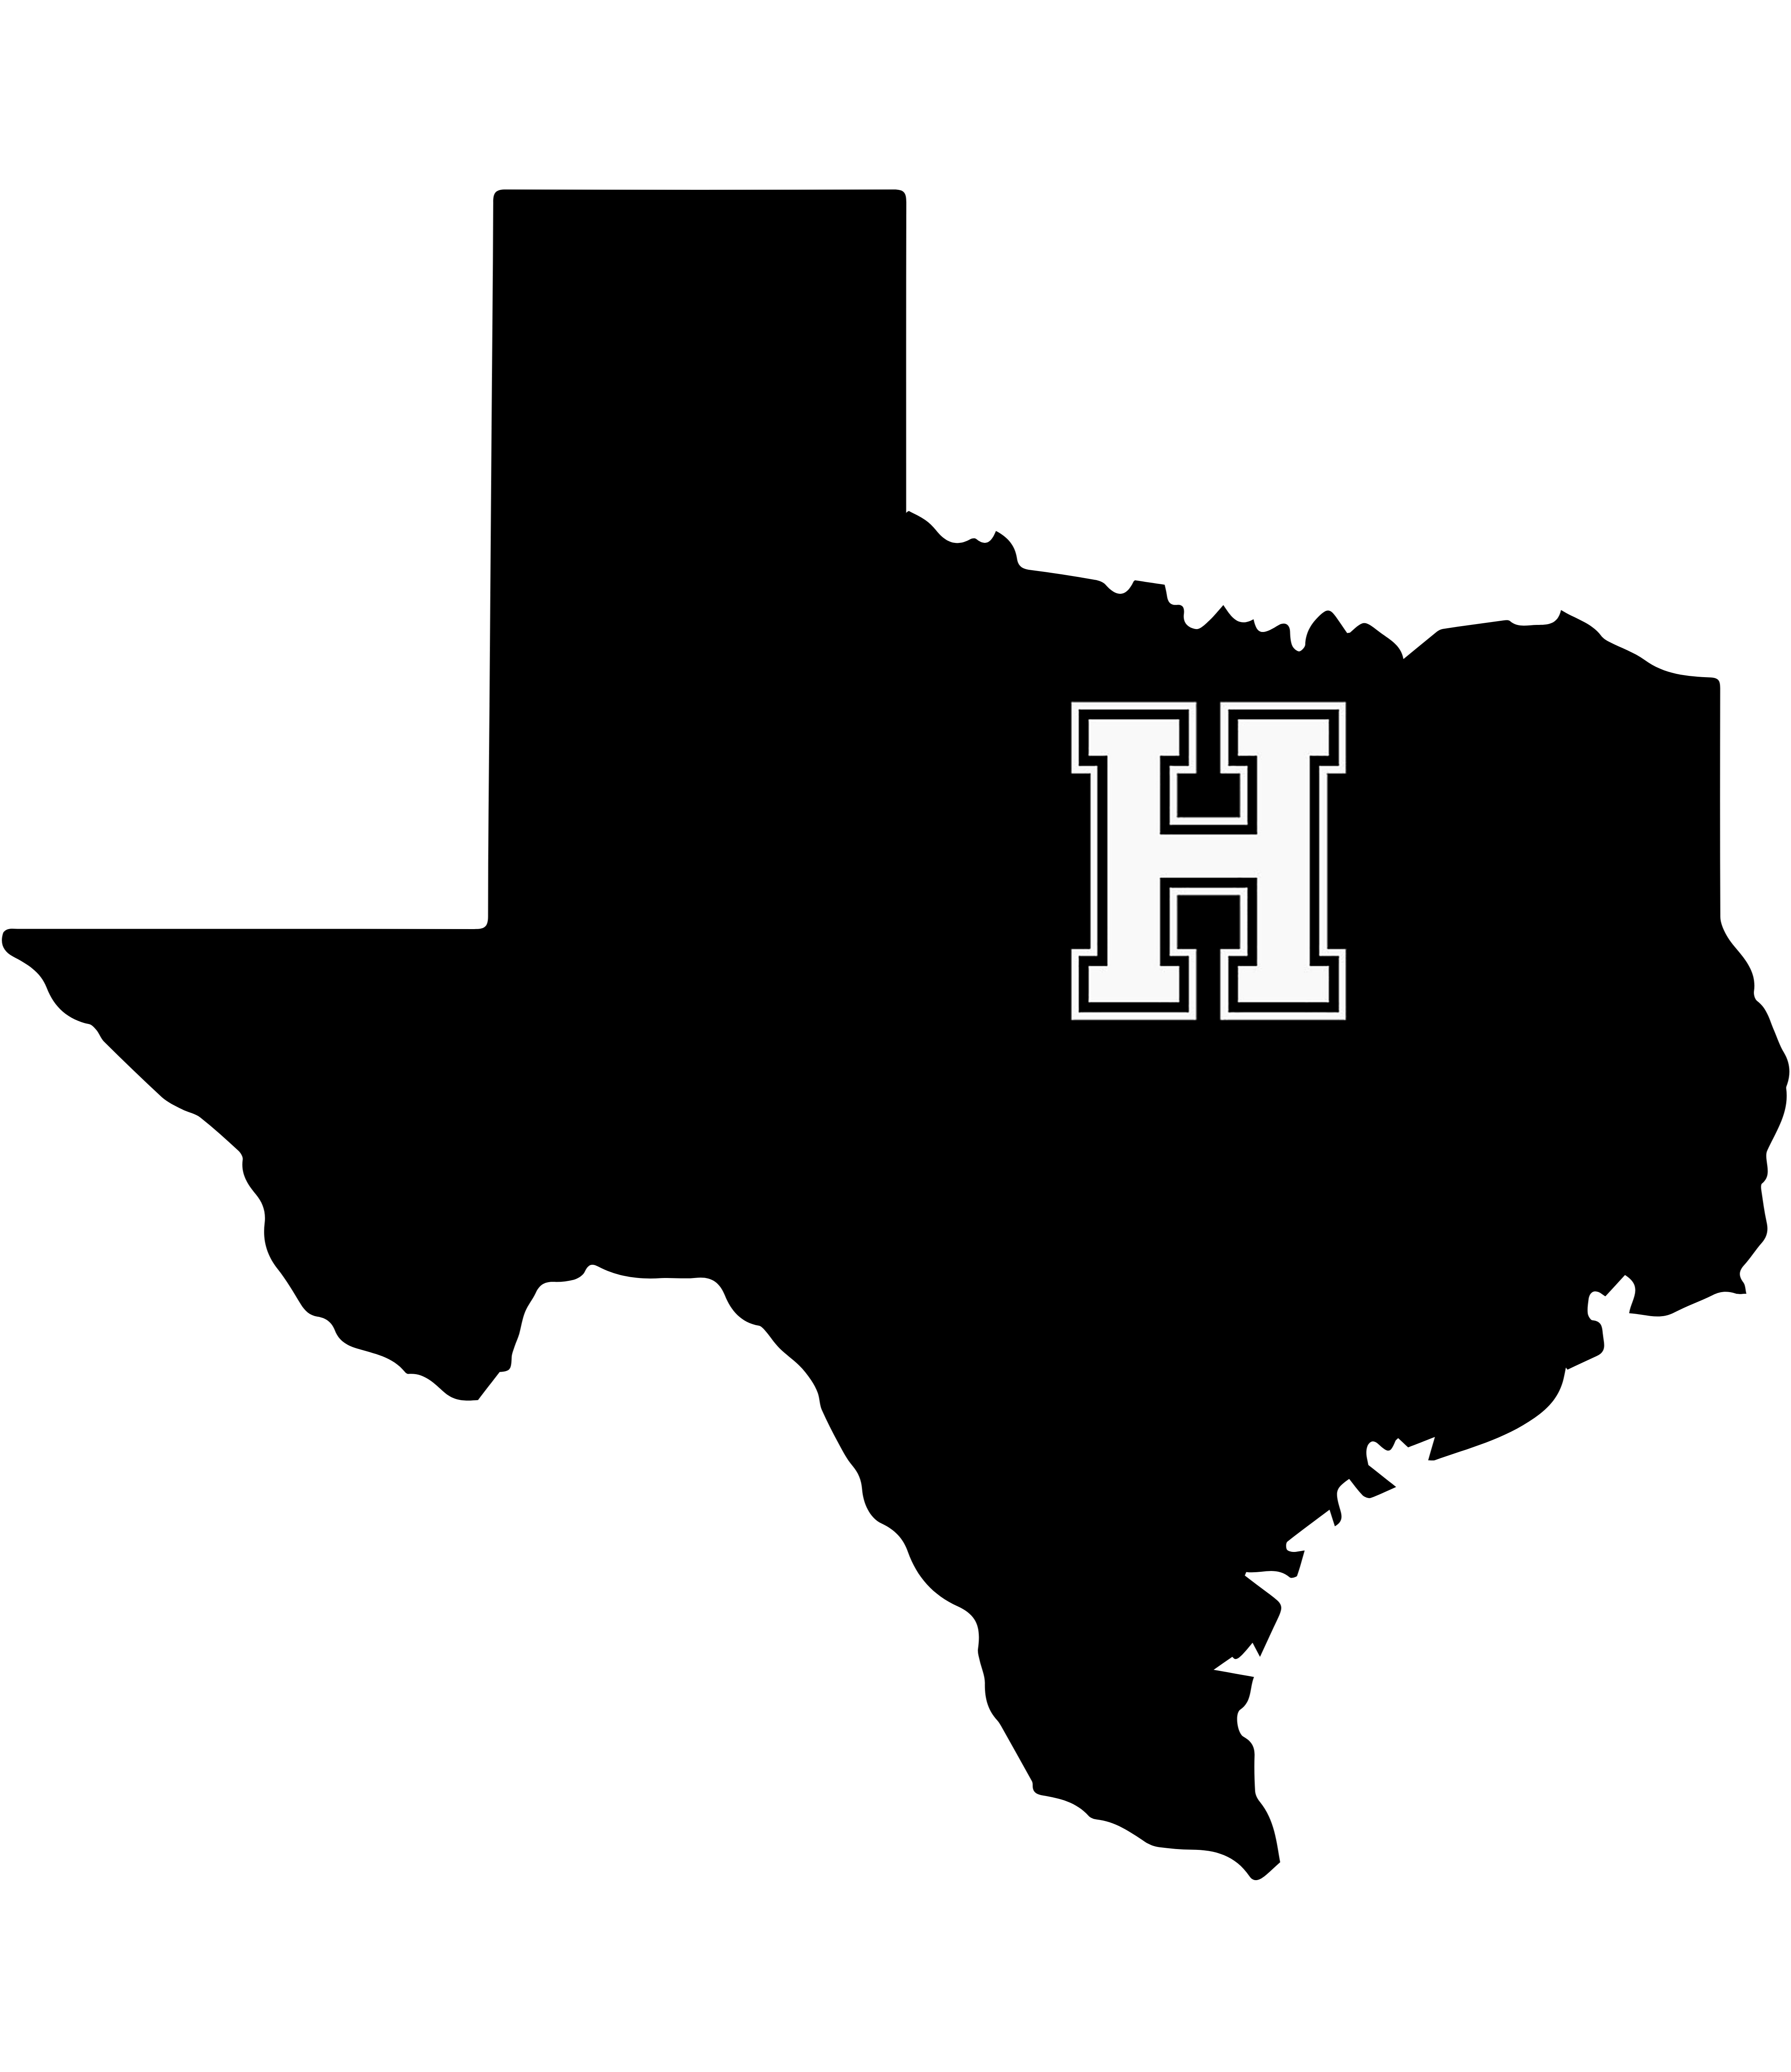 howe isd logo, texas outline